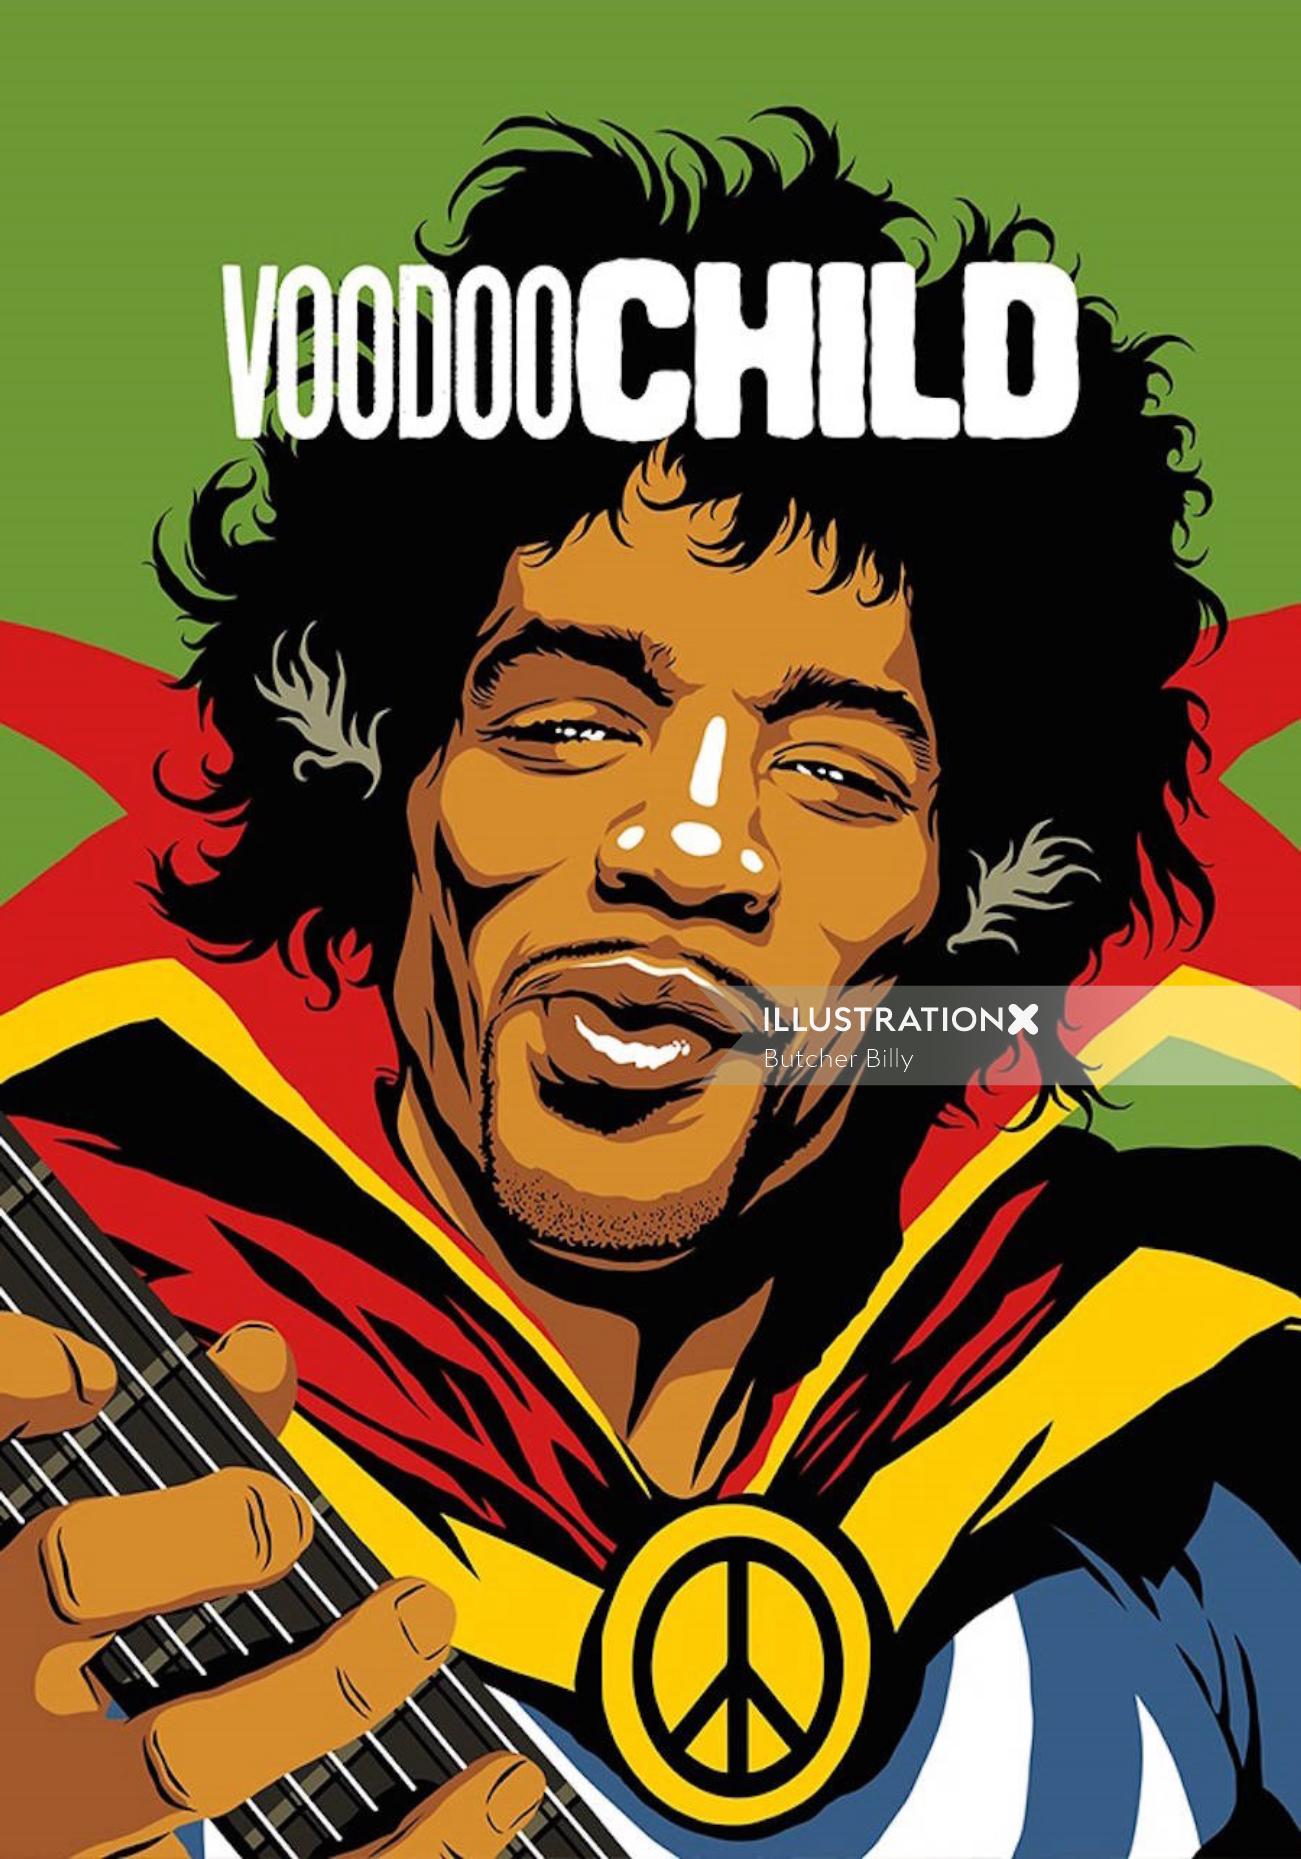 Arte retro de Jimi Hendrix: Voodoo Child